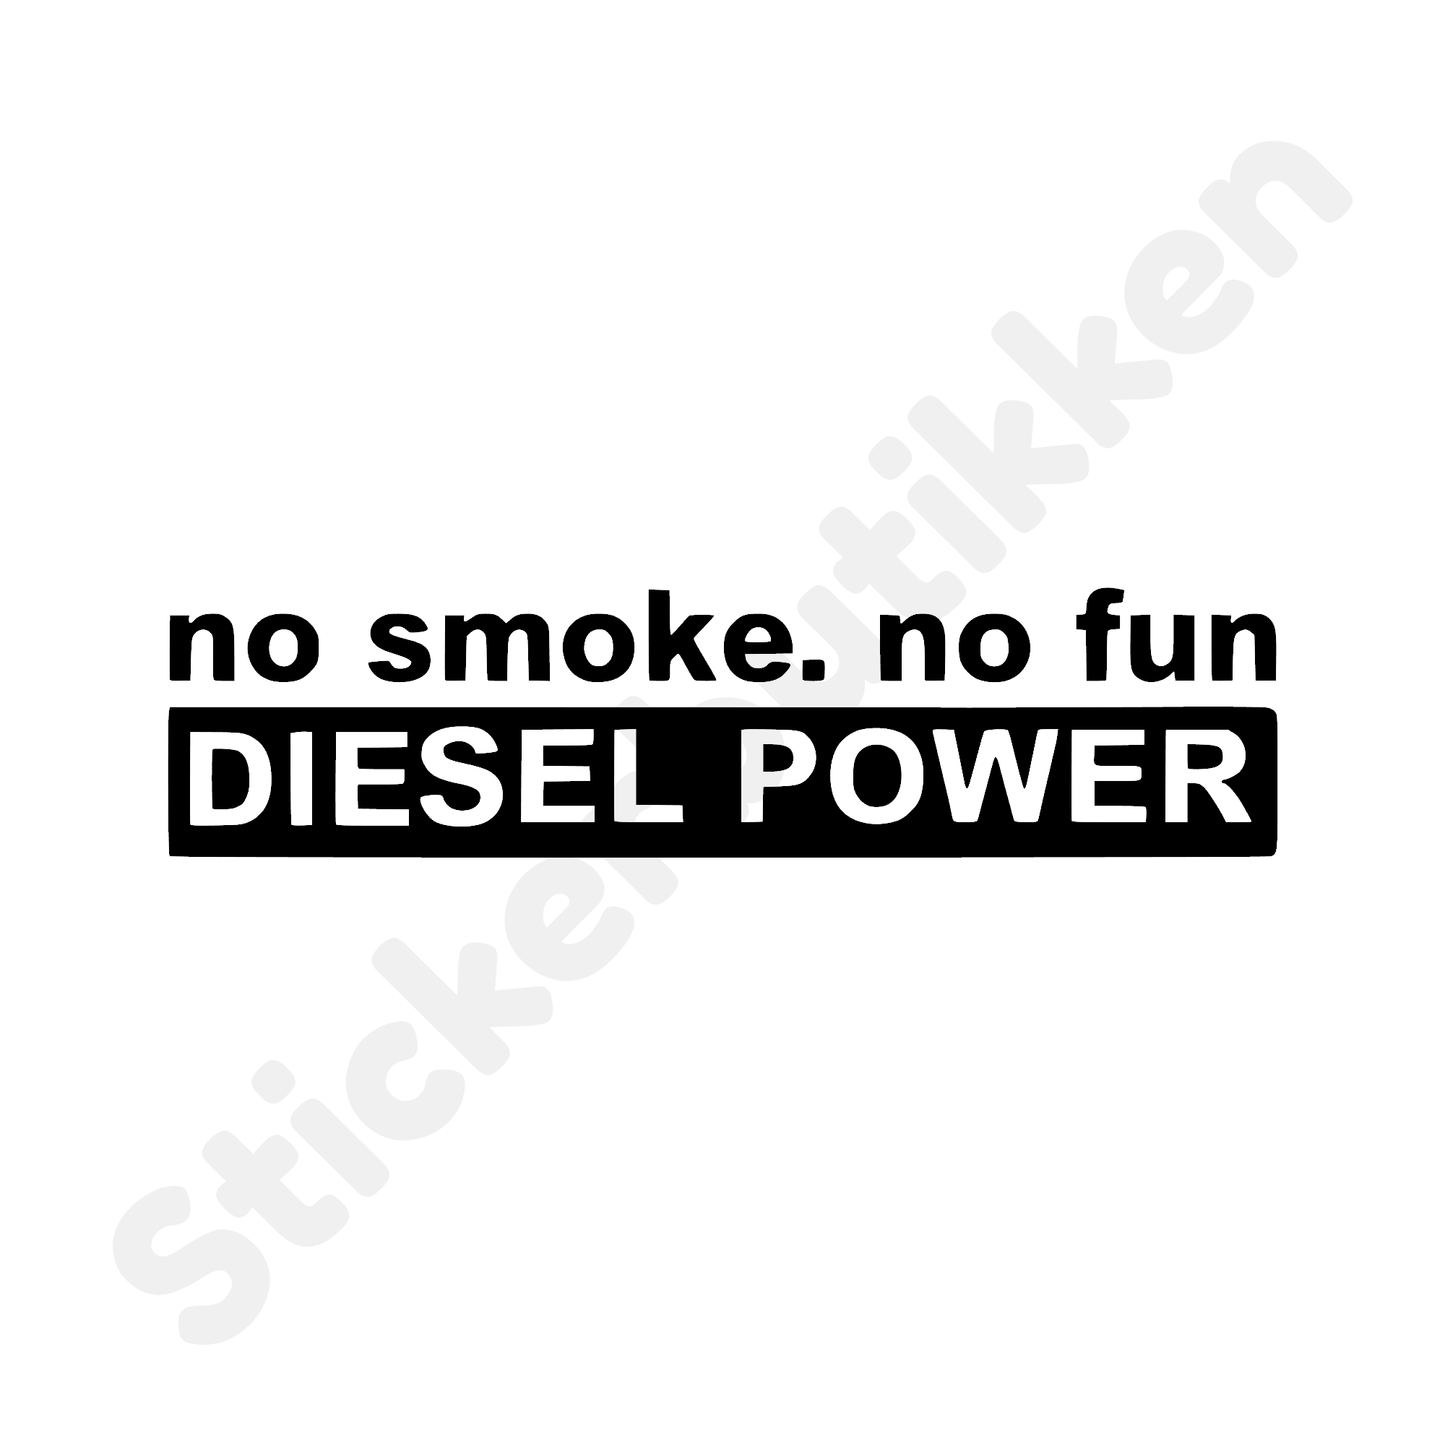 No Smoke. No Fun.